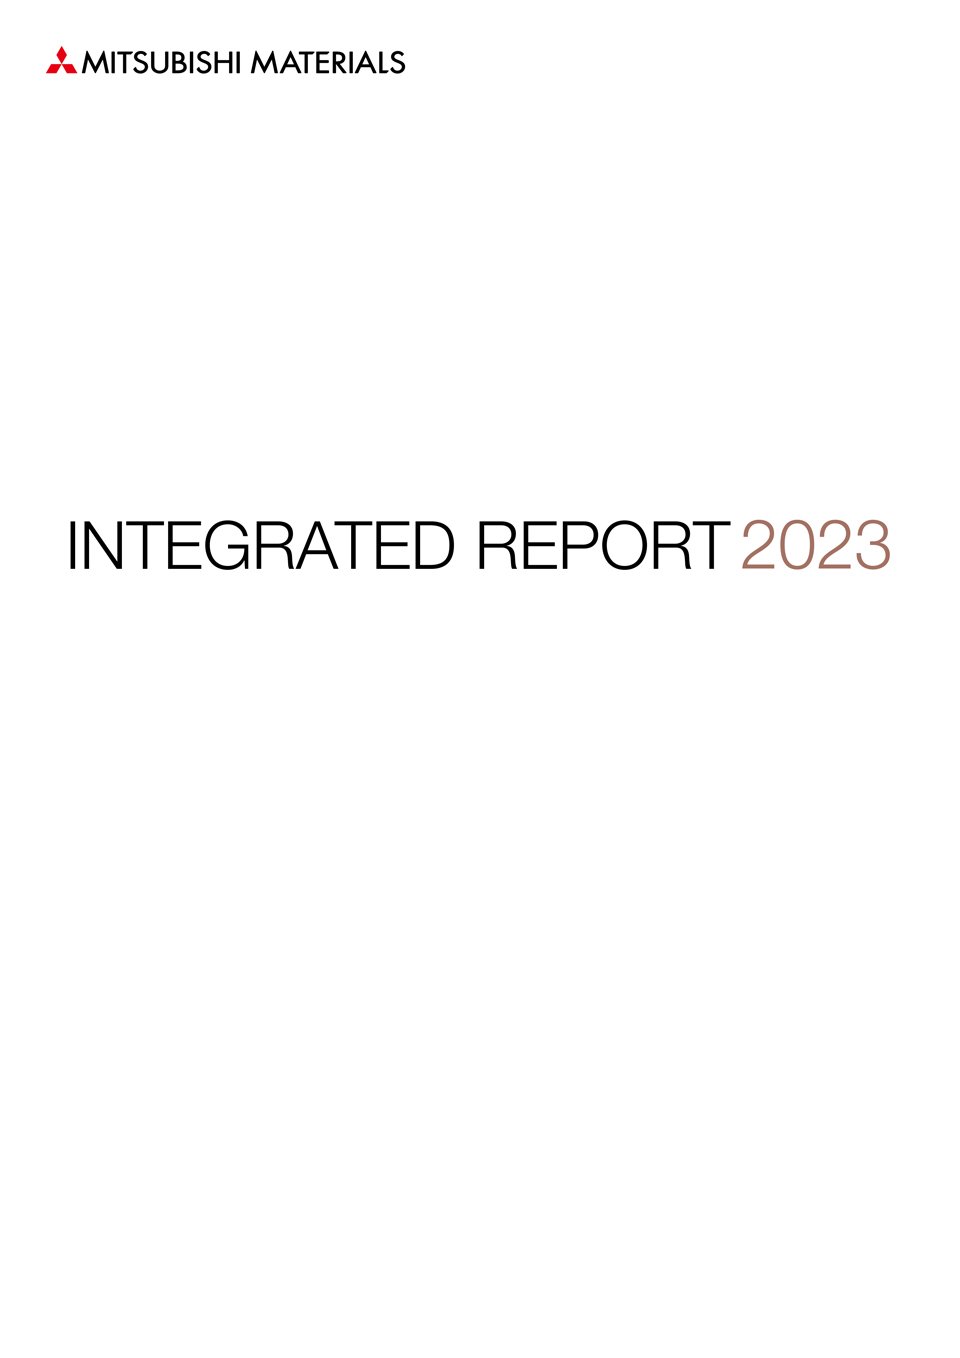 Mitsubishi Materials Integrated Report 2023